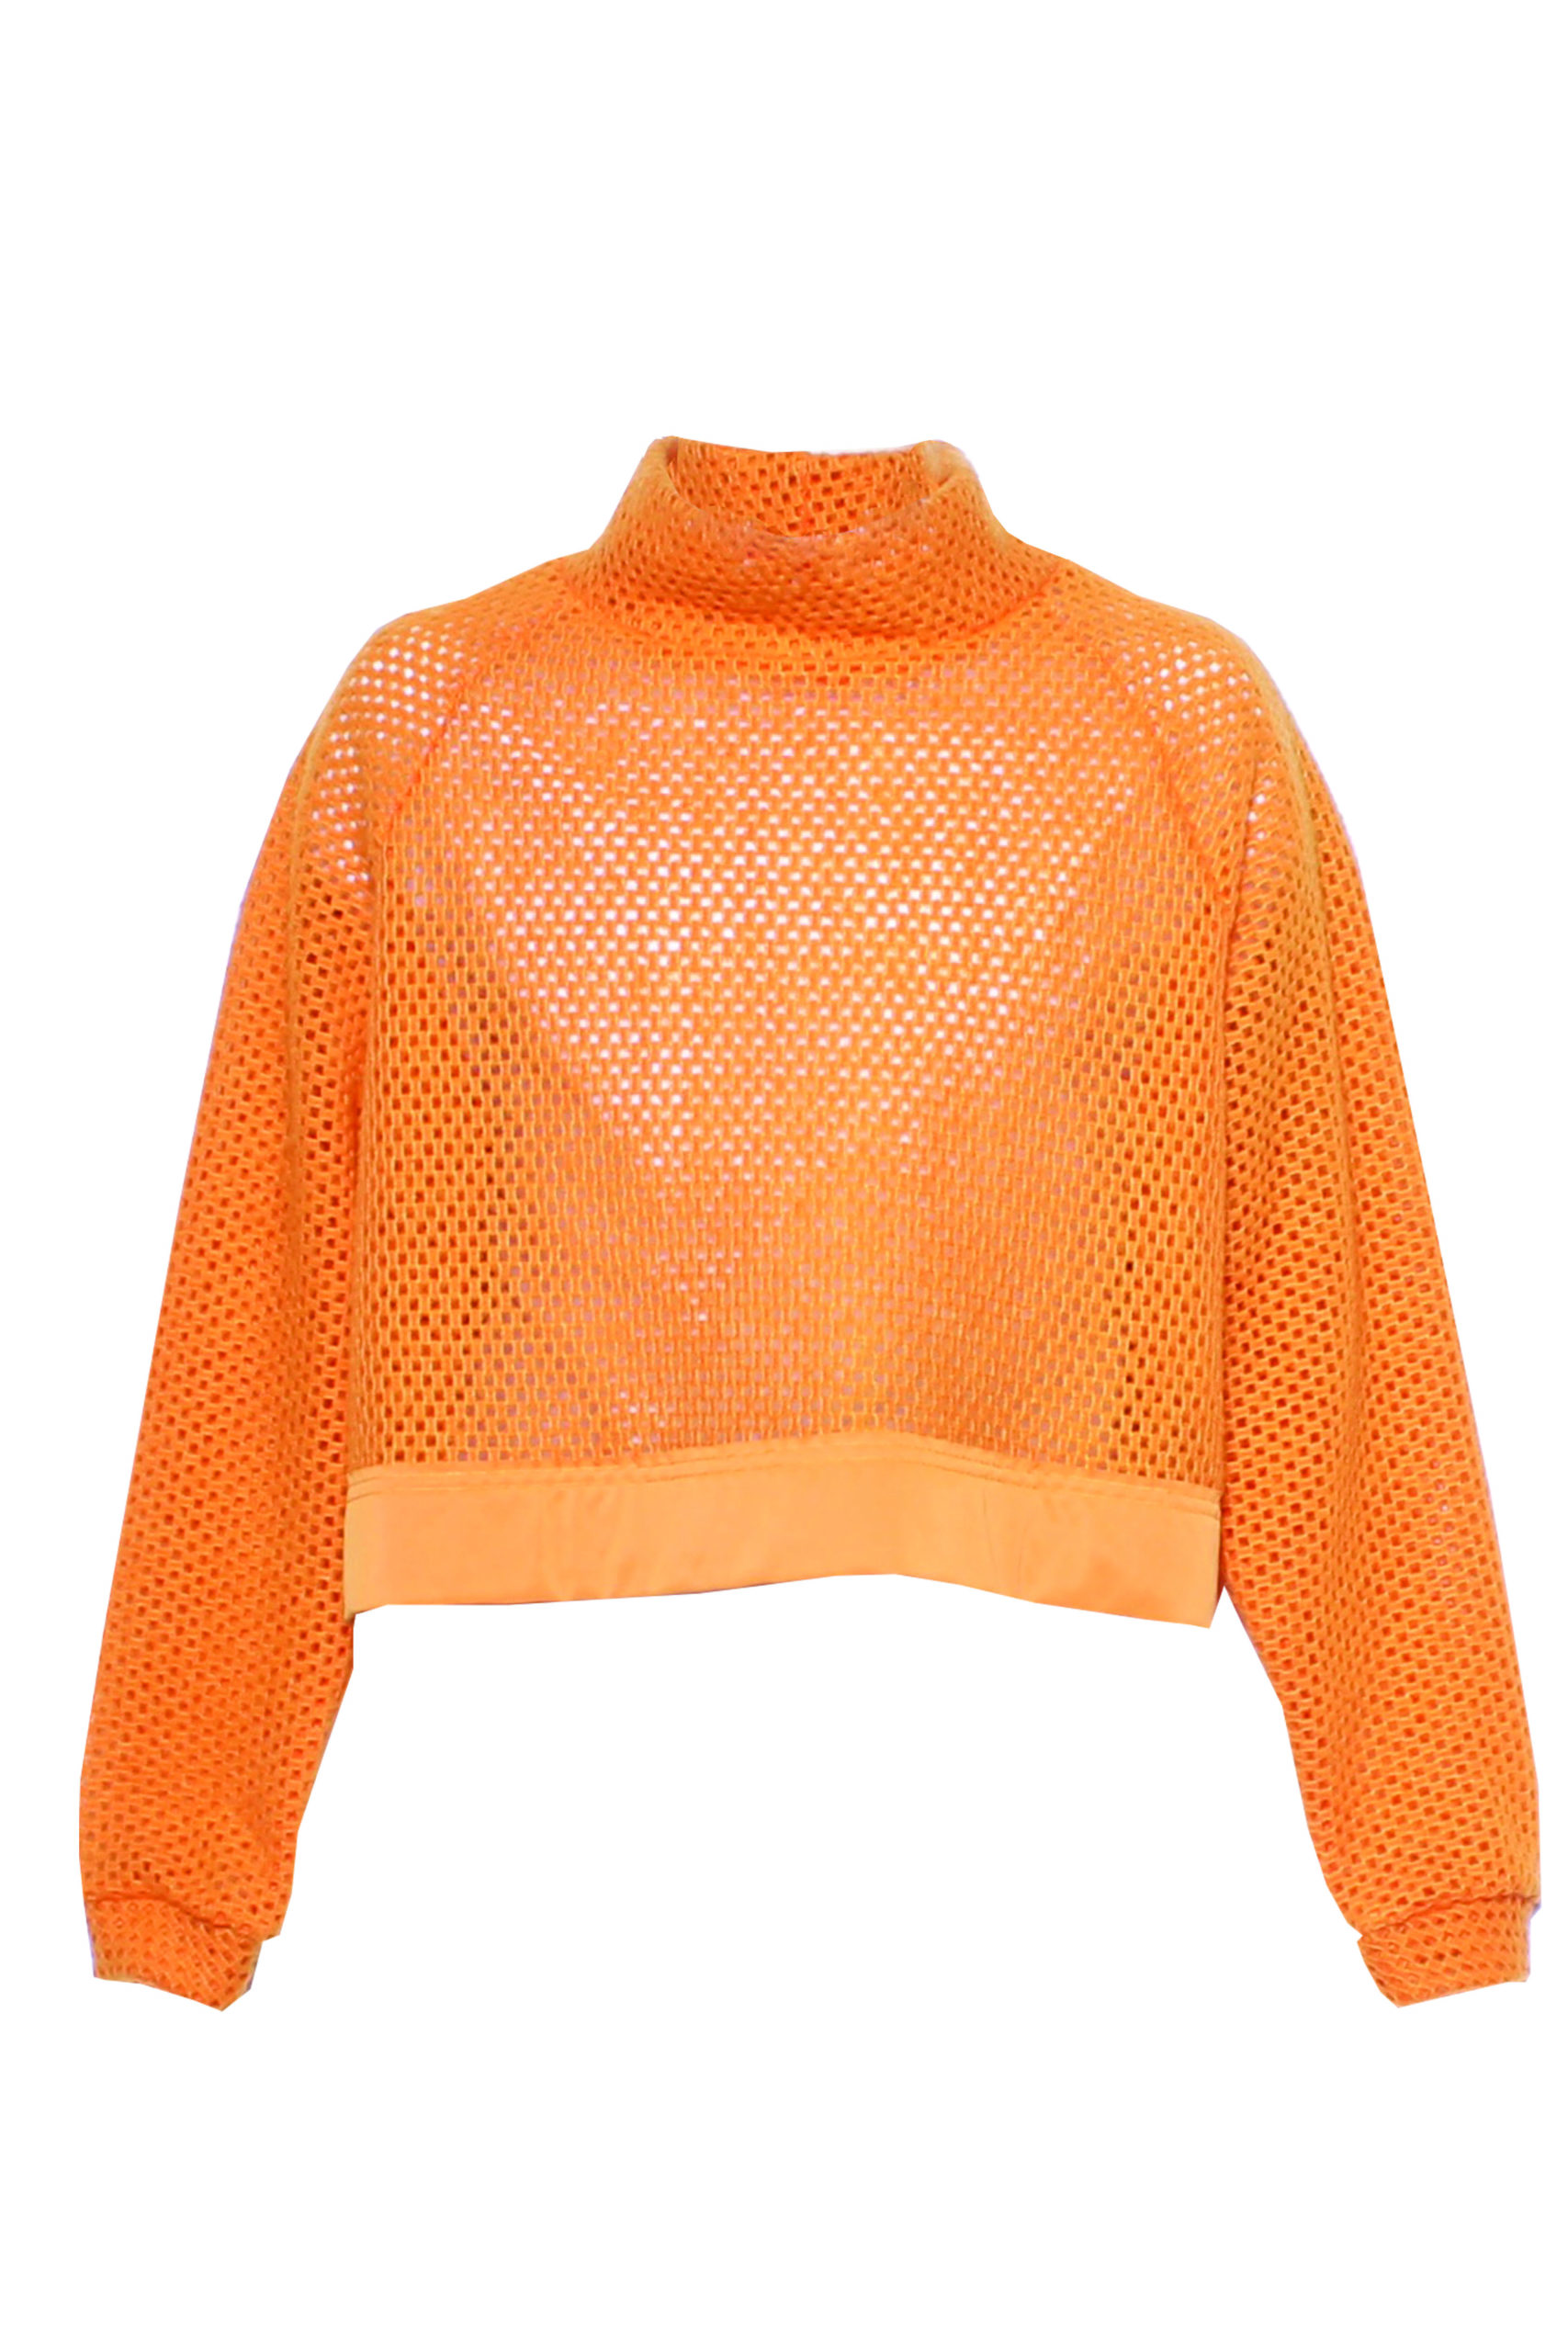 Orange Honeycomb Jumper – Fuud London